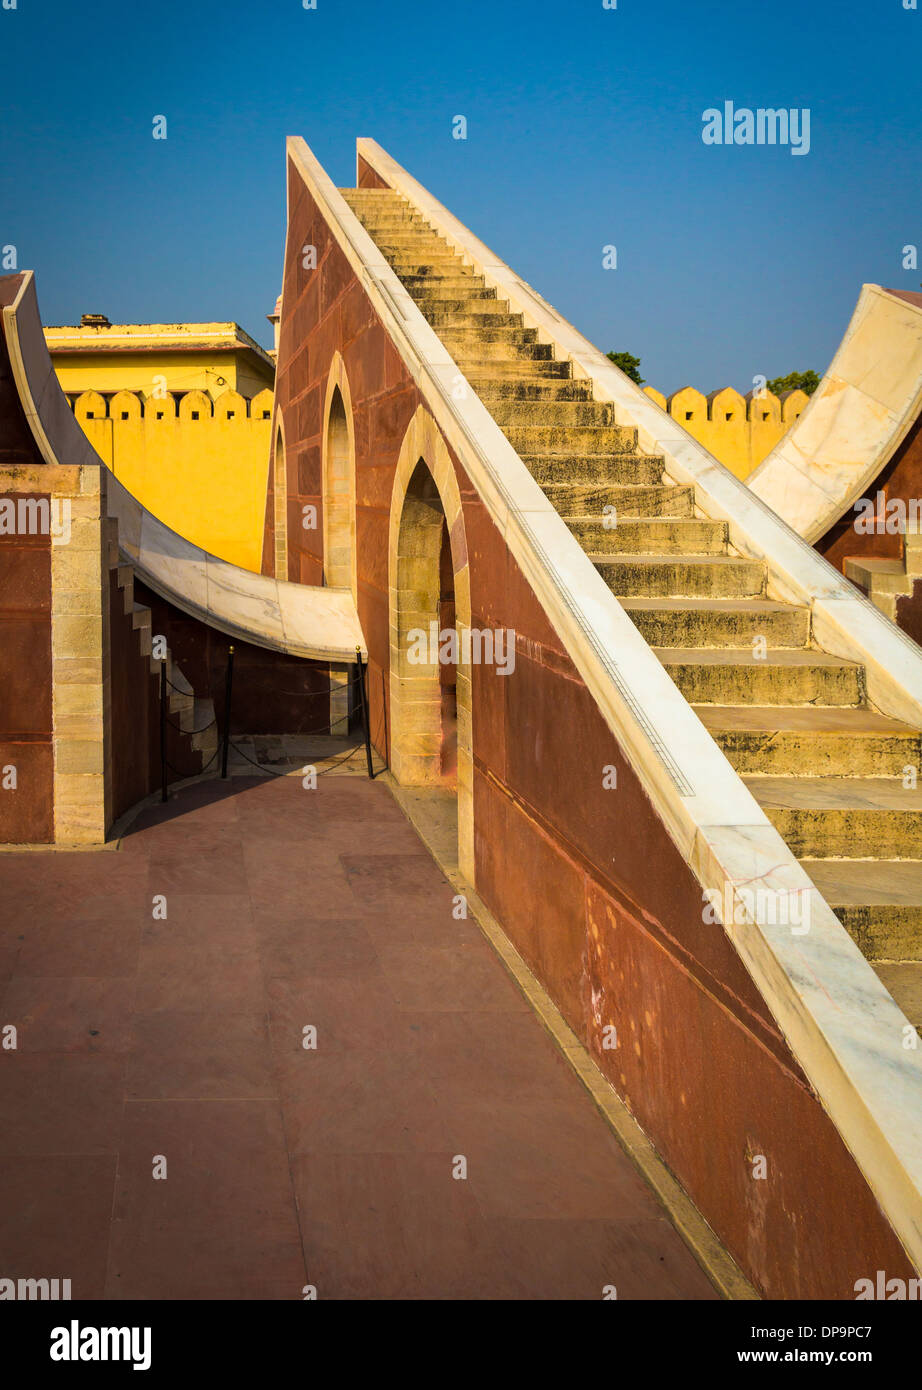 El Jantar Mantar es una colección de instrumentos astronómicos arquitectónicos en Jaipur, India Foto de stock